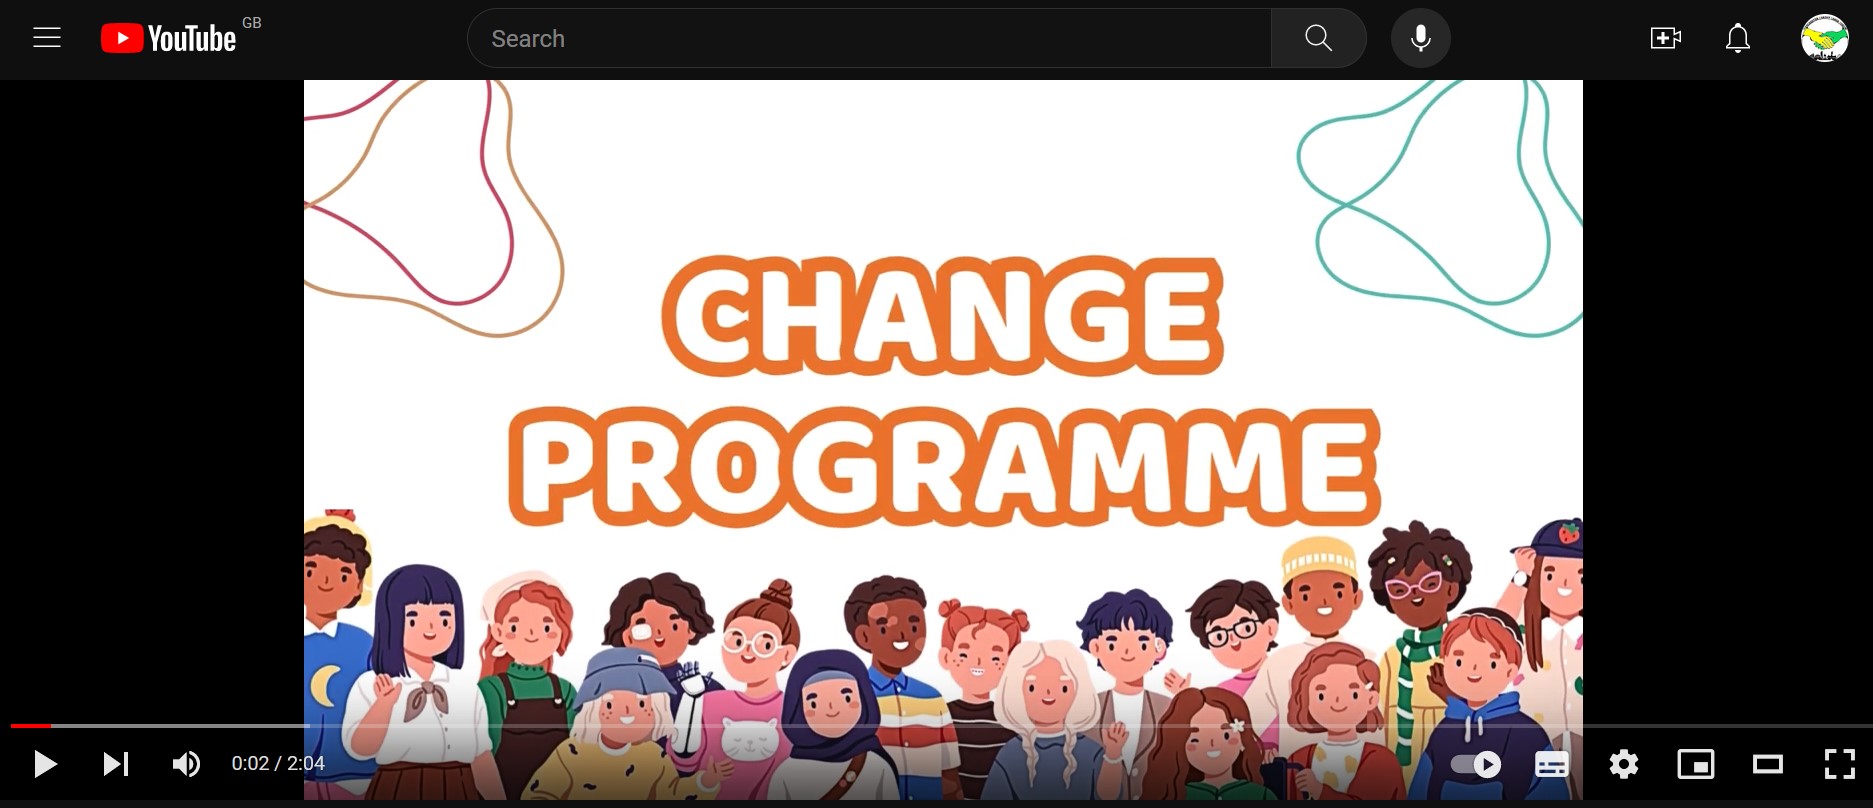 Change Programme Video